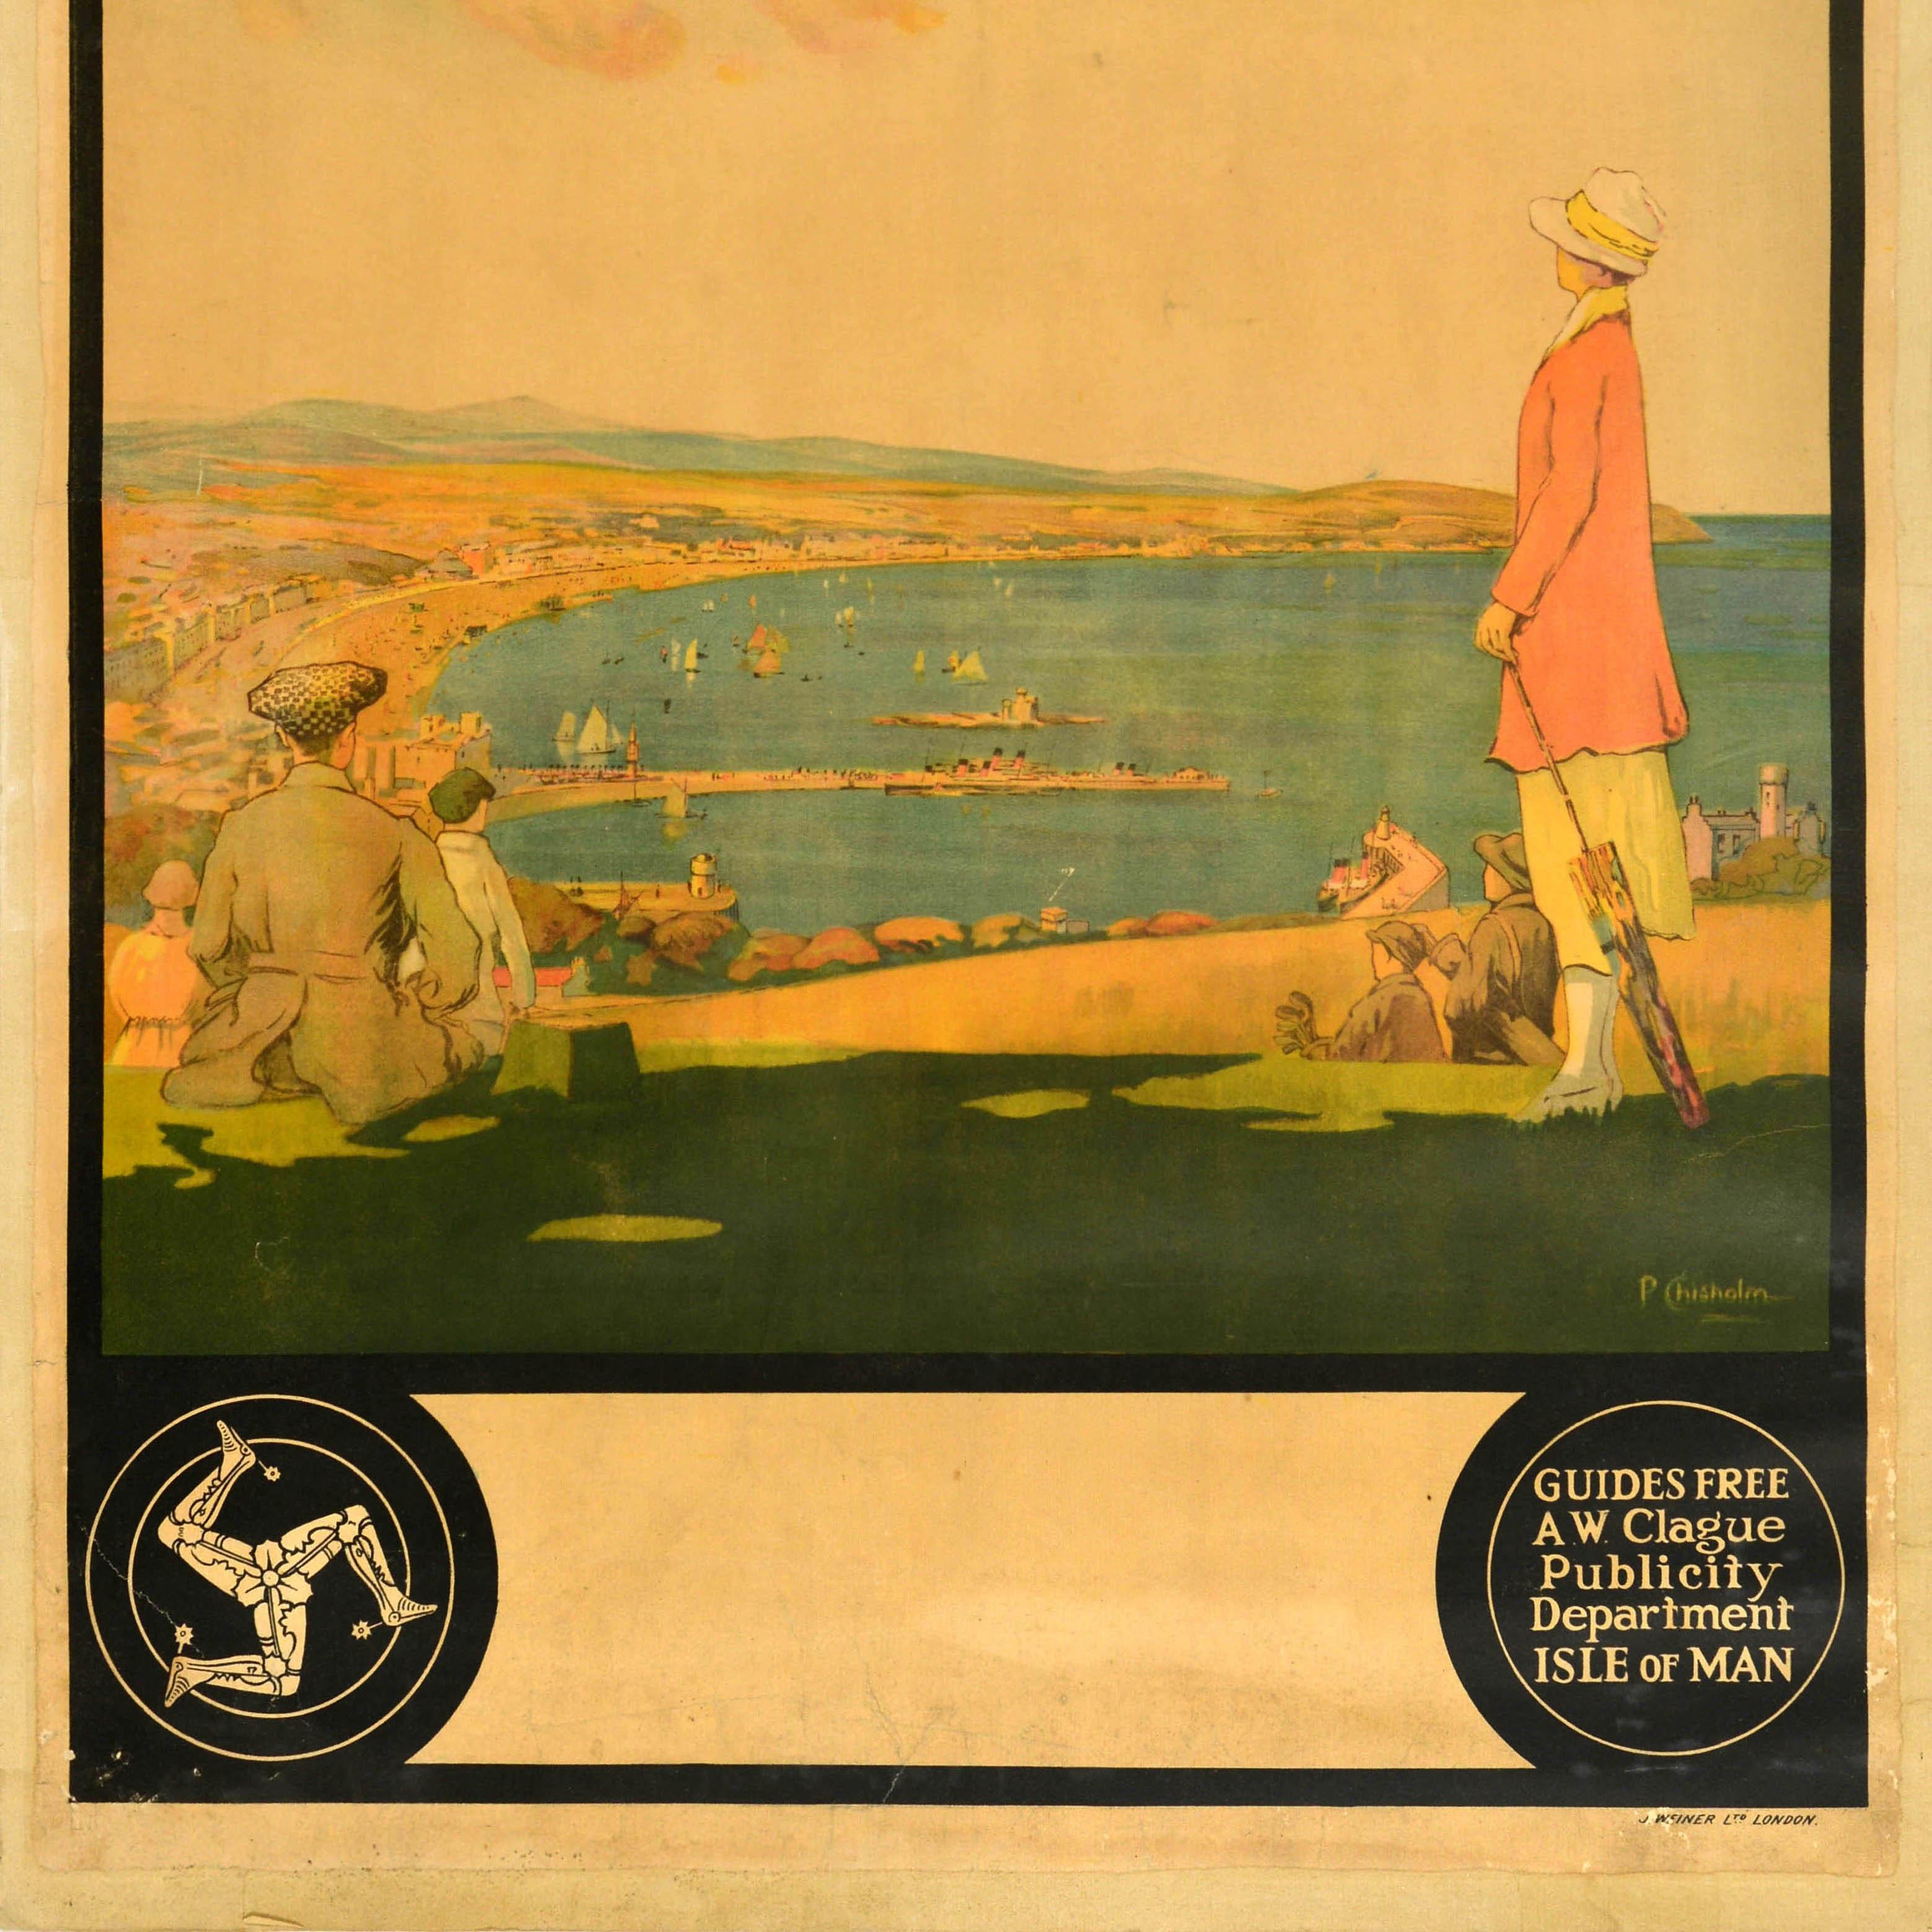 Original Vintage-Reiseplakat - Isle of Man for Happy Holidays - mit einem großartigen Design, das Menschen zeigt, die die malerische Aussicht über die Douglas Bay mit Segelbooten und Dampfschiffen am historischen Tower of Refuge (1832 für